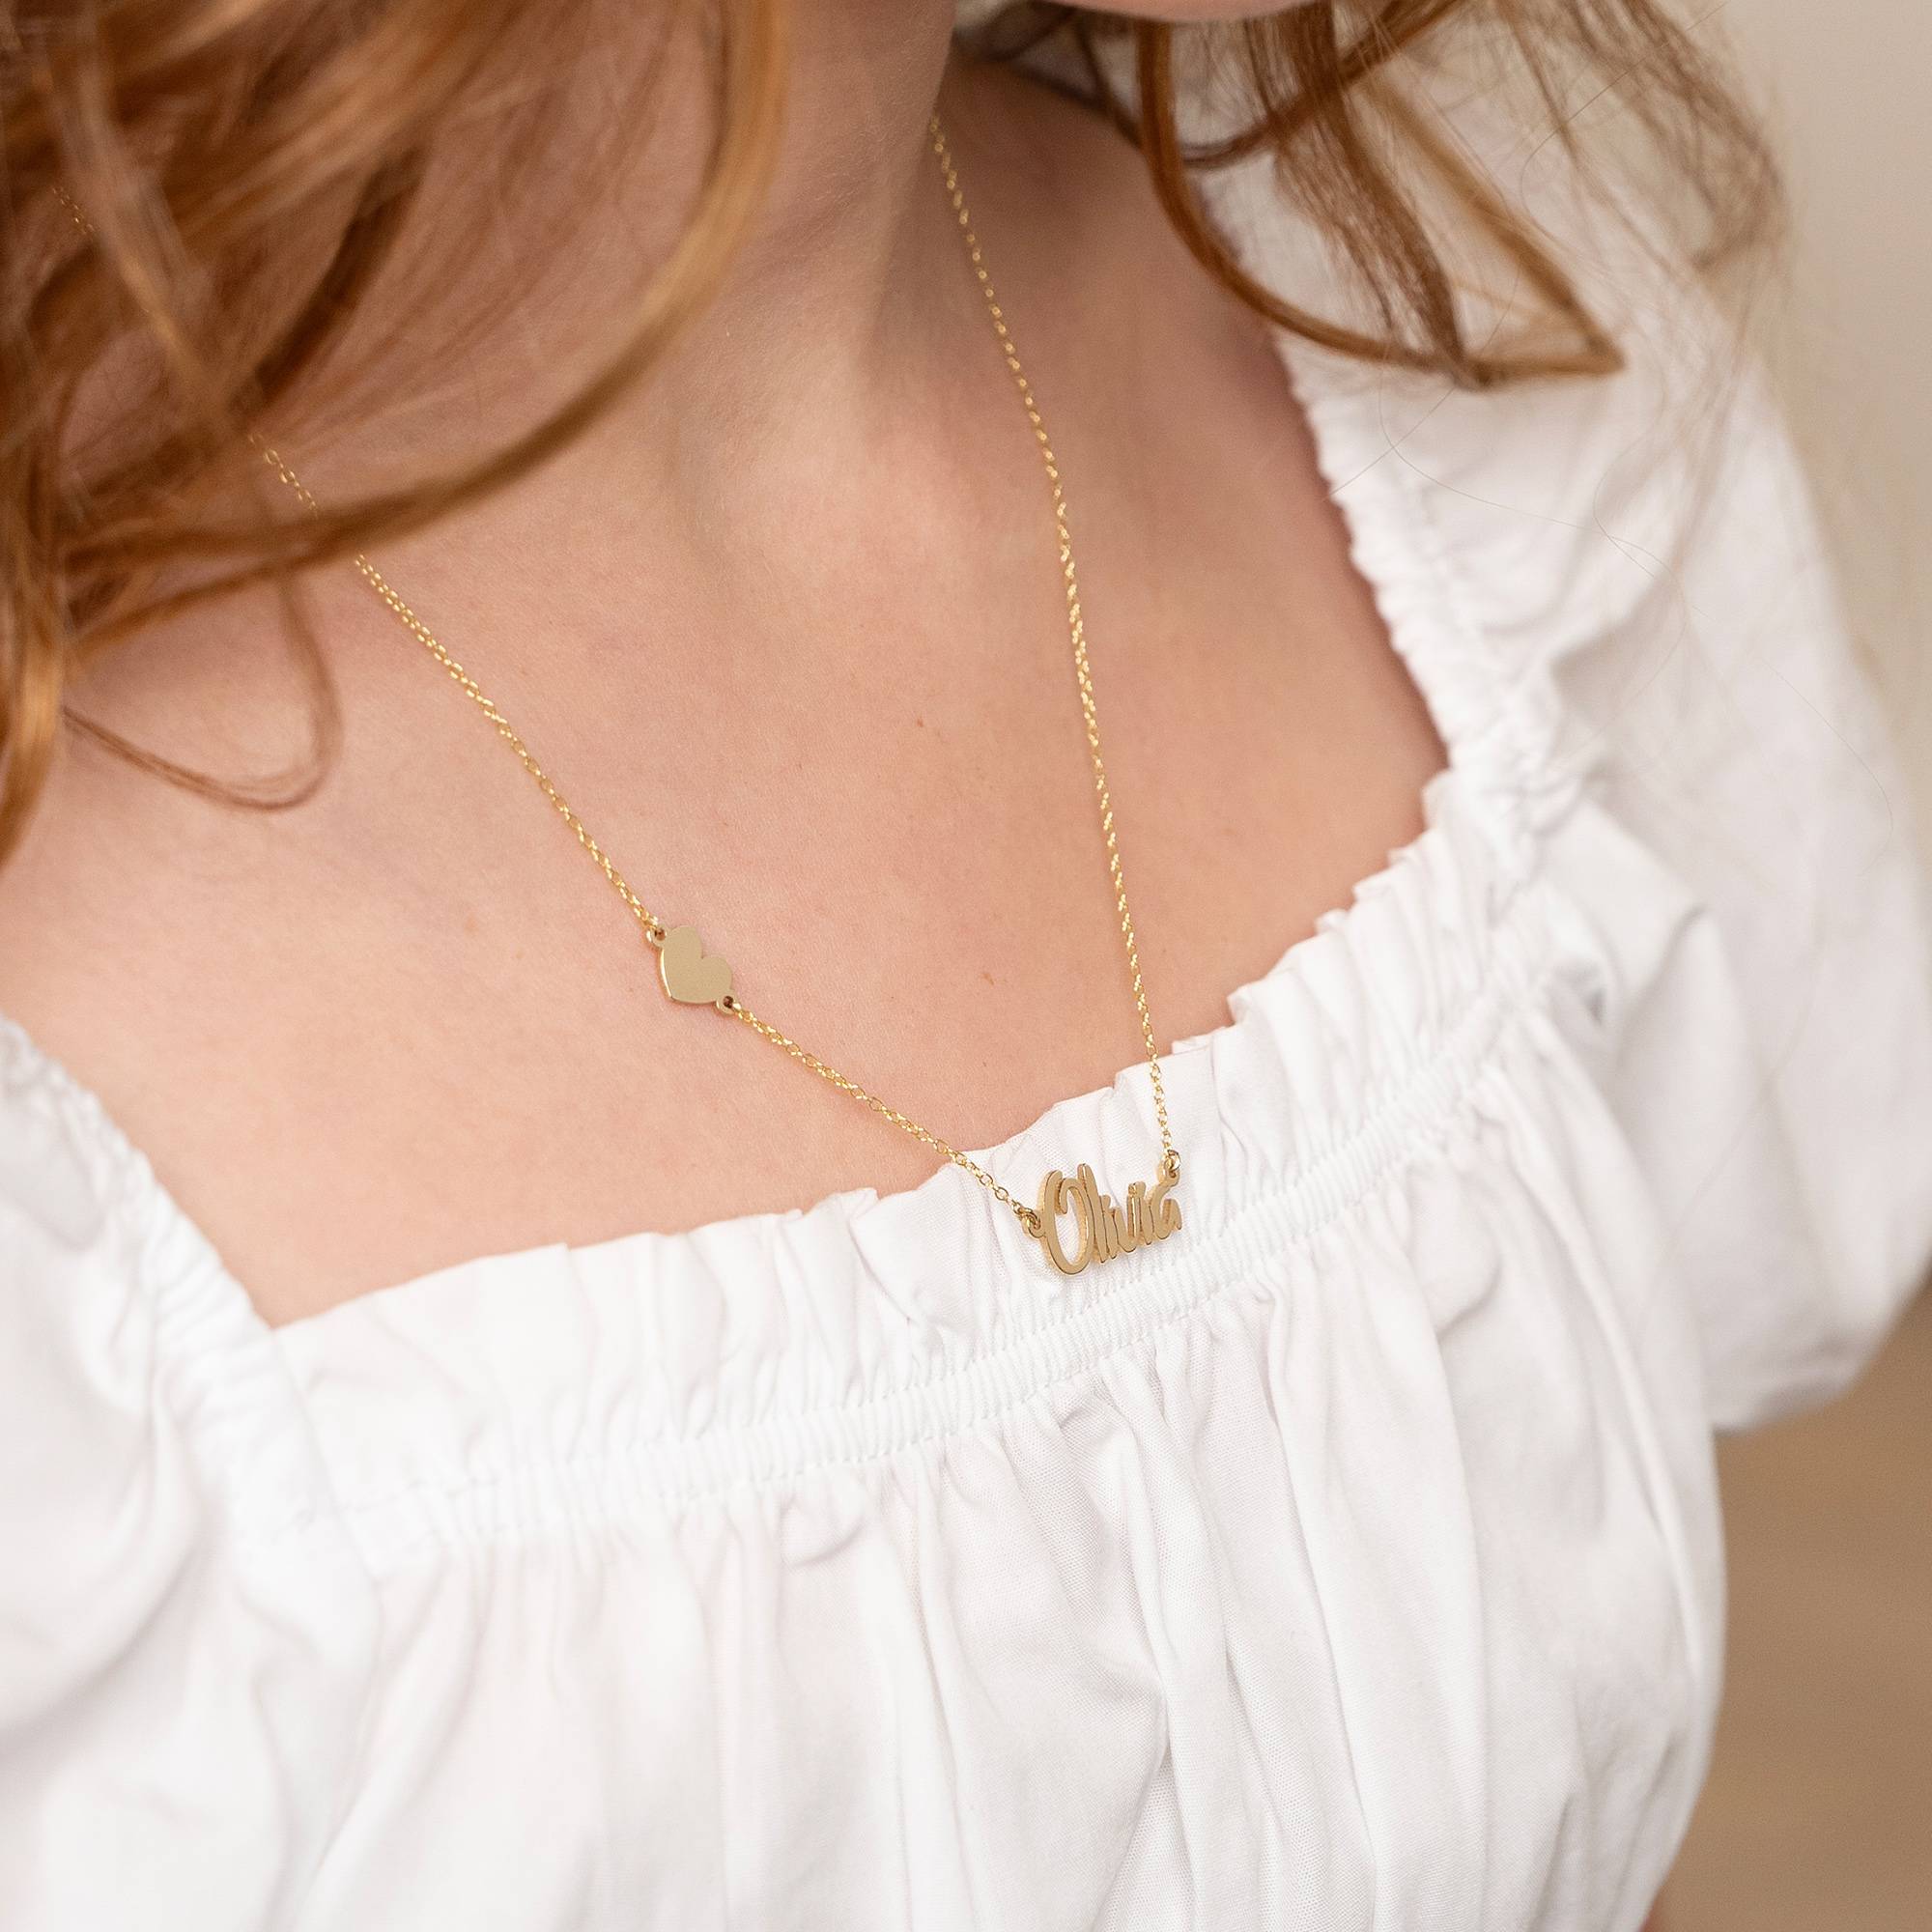 Charlotte Namenskette mit Schmetterling / Herz / Stern für Mädchen - 585er Gelbgold-1 Produktfoto